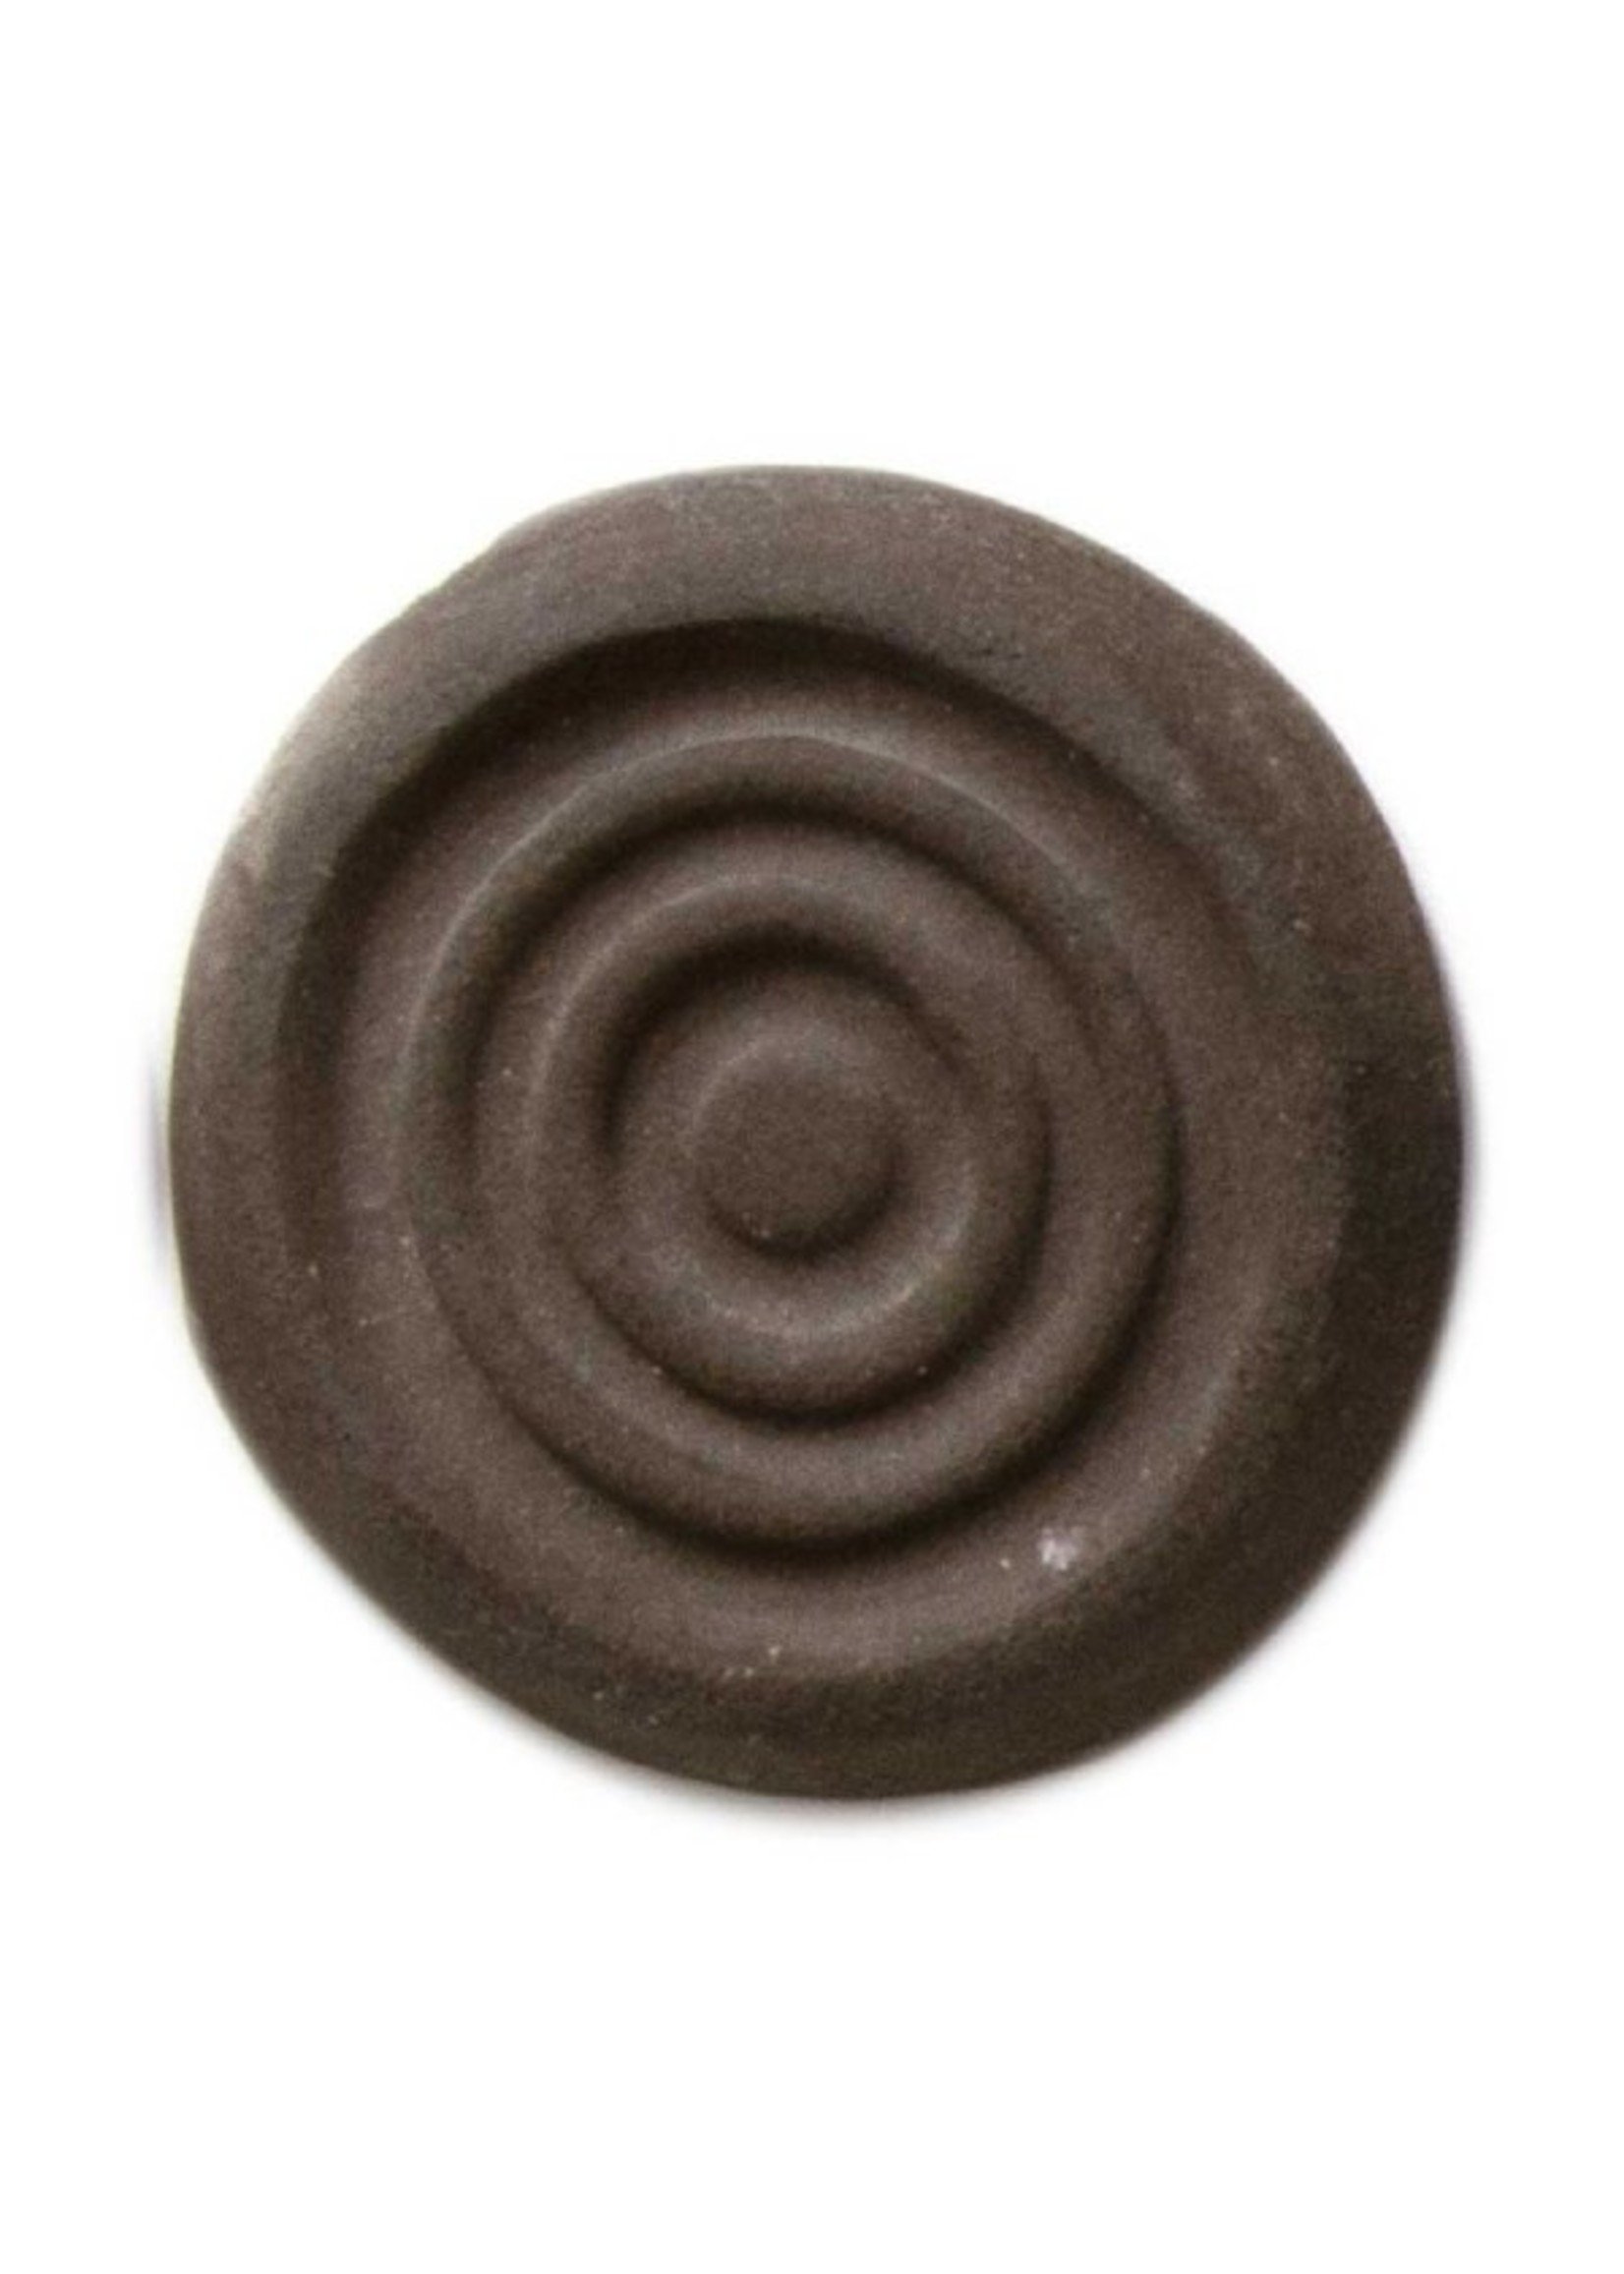 Standard Ceramic Dark Brown Clay cone 5 #266 - 25lb bag